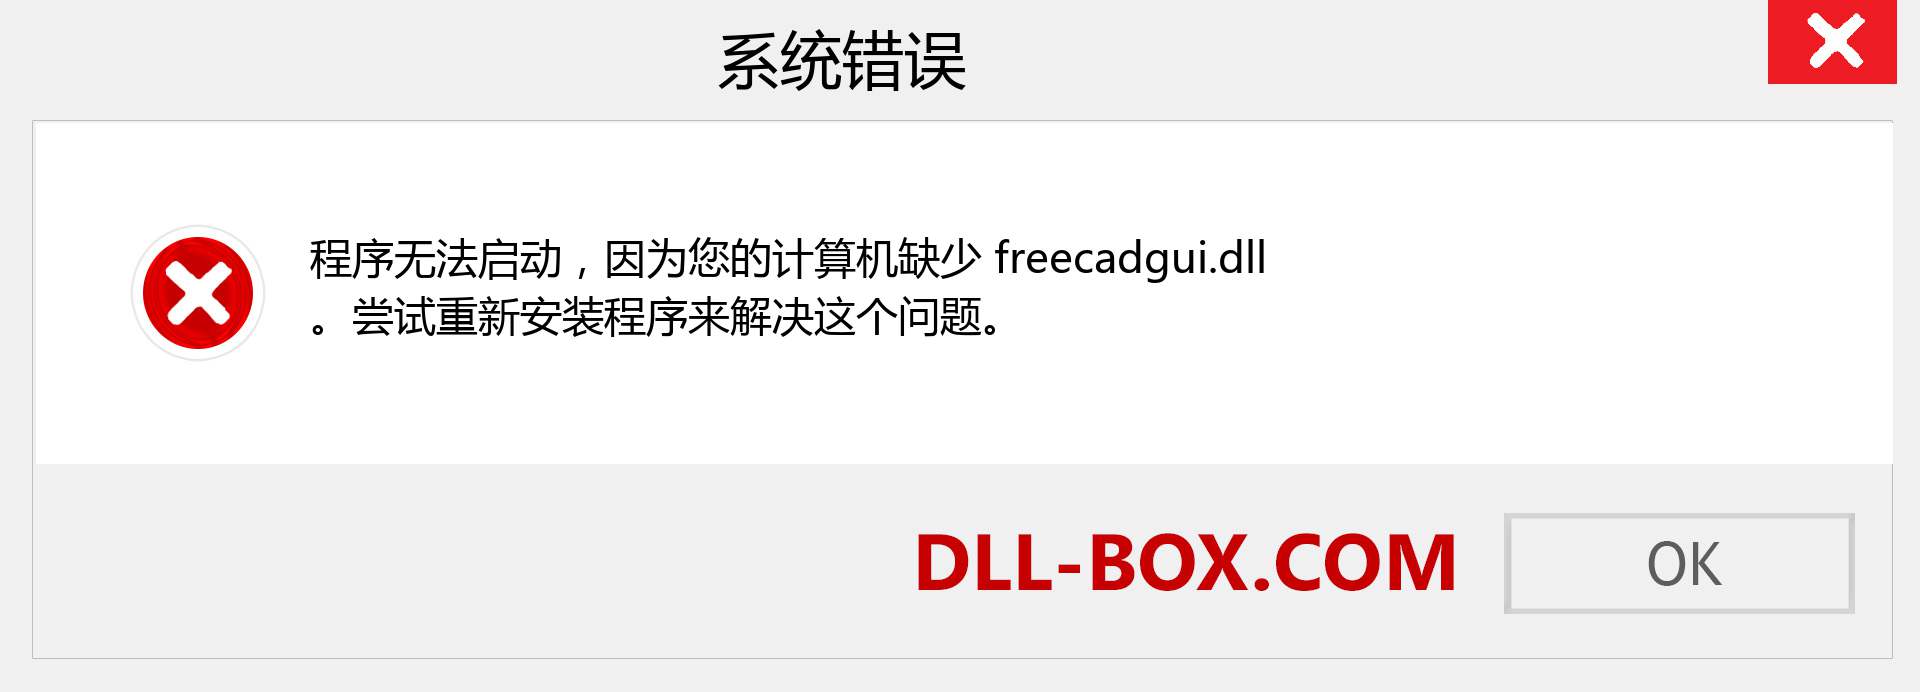 freecadgui.dll 文件丢失？。 适用于 Windows 7、8、10 的下载 - 修复 Windows、照片、图像上的 freecadgui dll 丢失错误